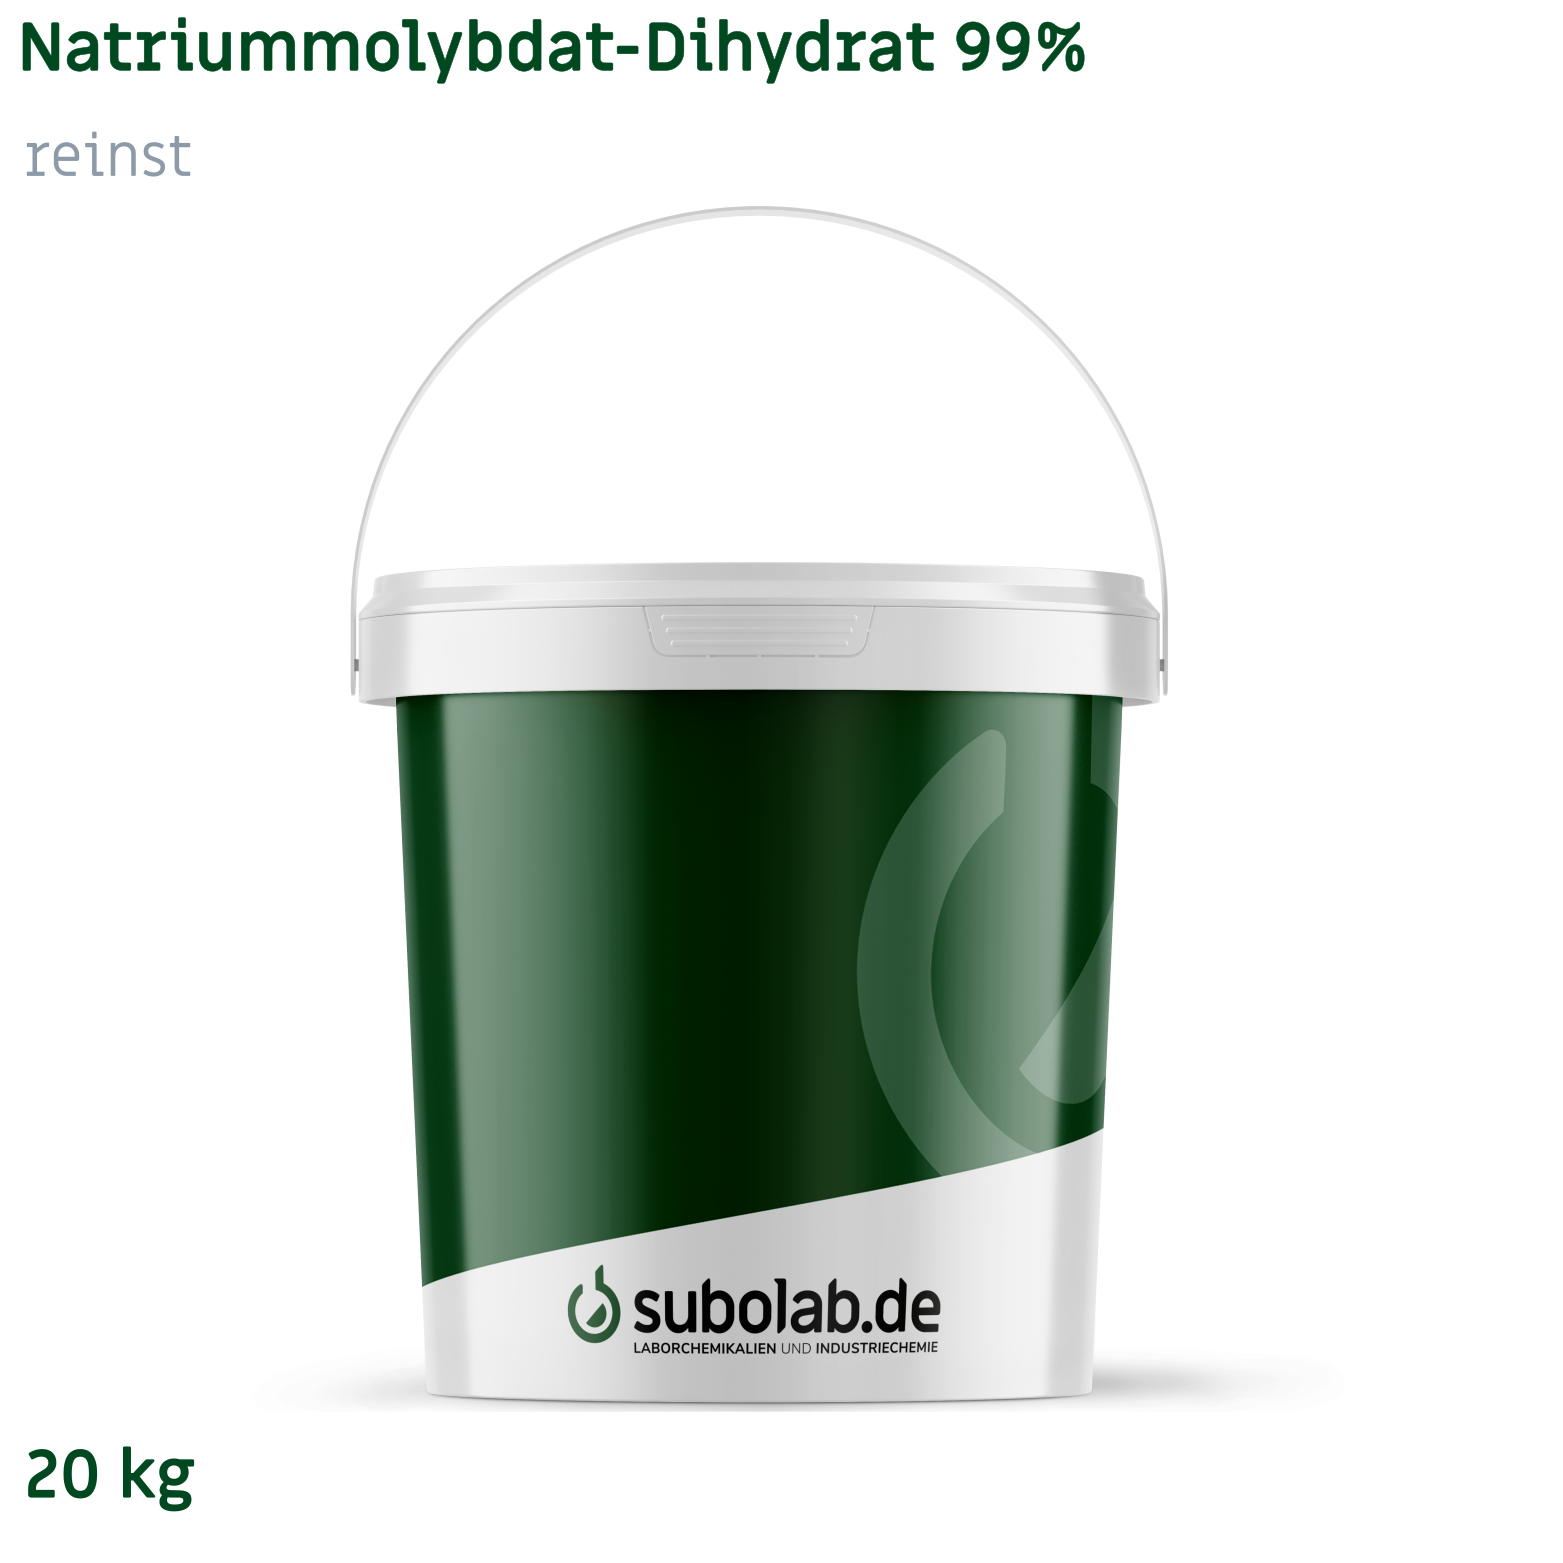 Bild von Natriummolybdat - Dihydrat 99% reinst (20 kg)